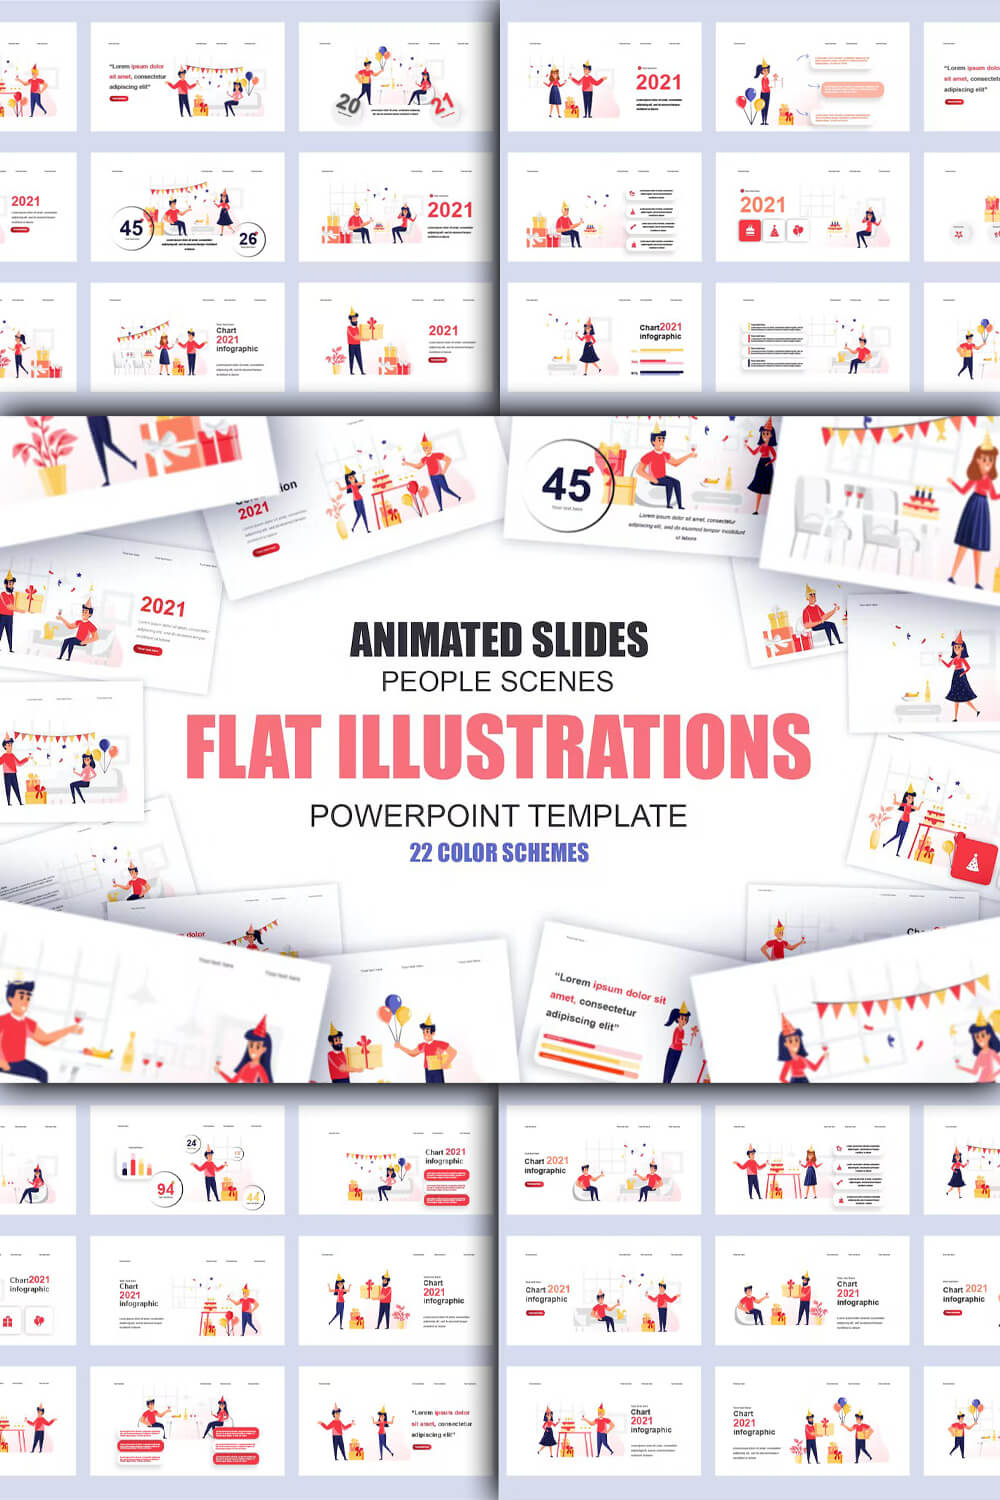 Flat illustrations (people scenes).